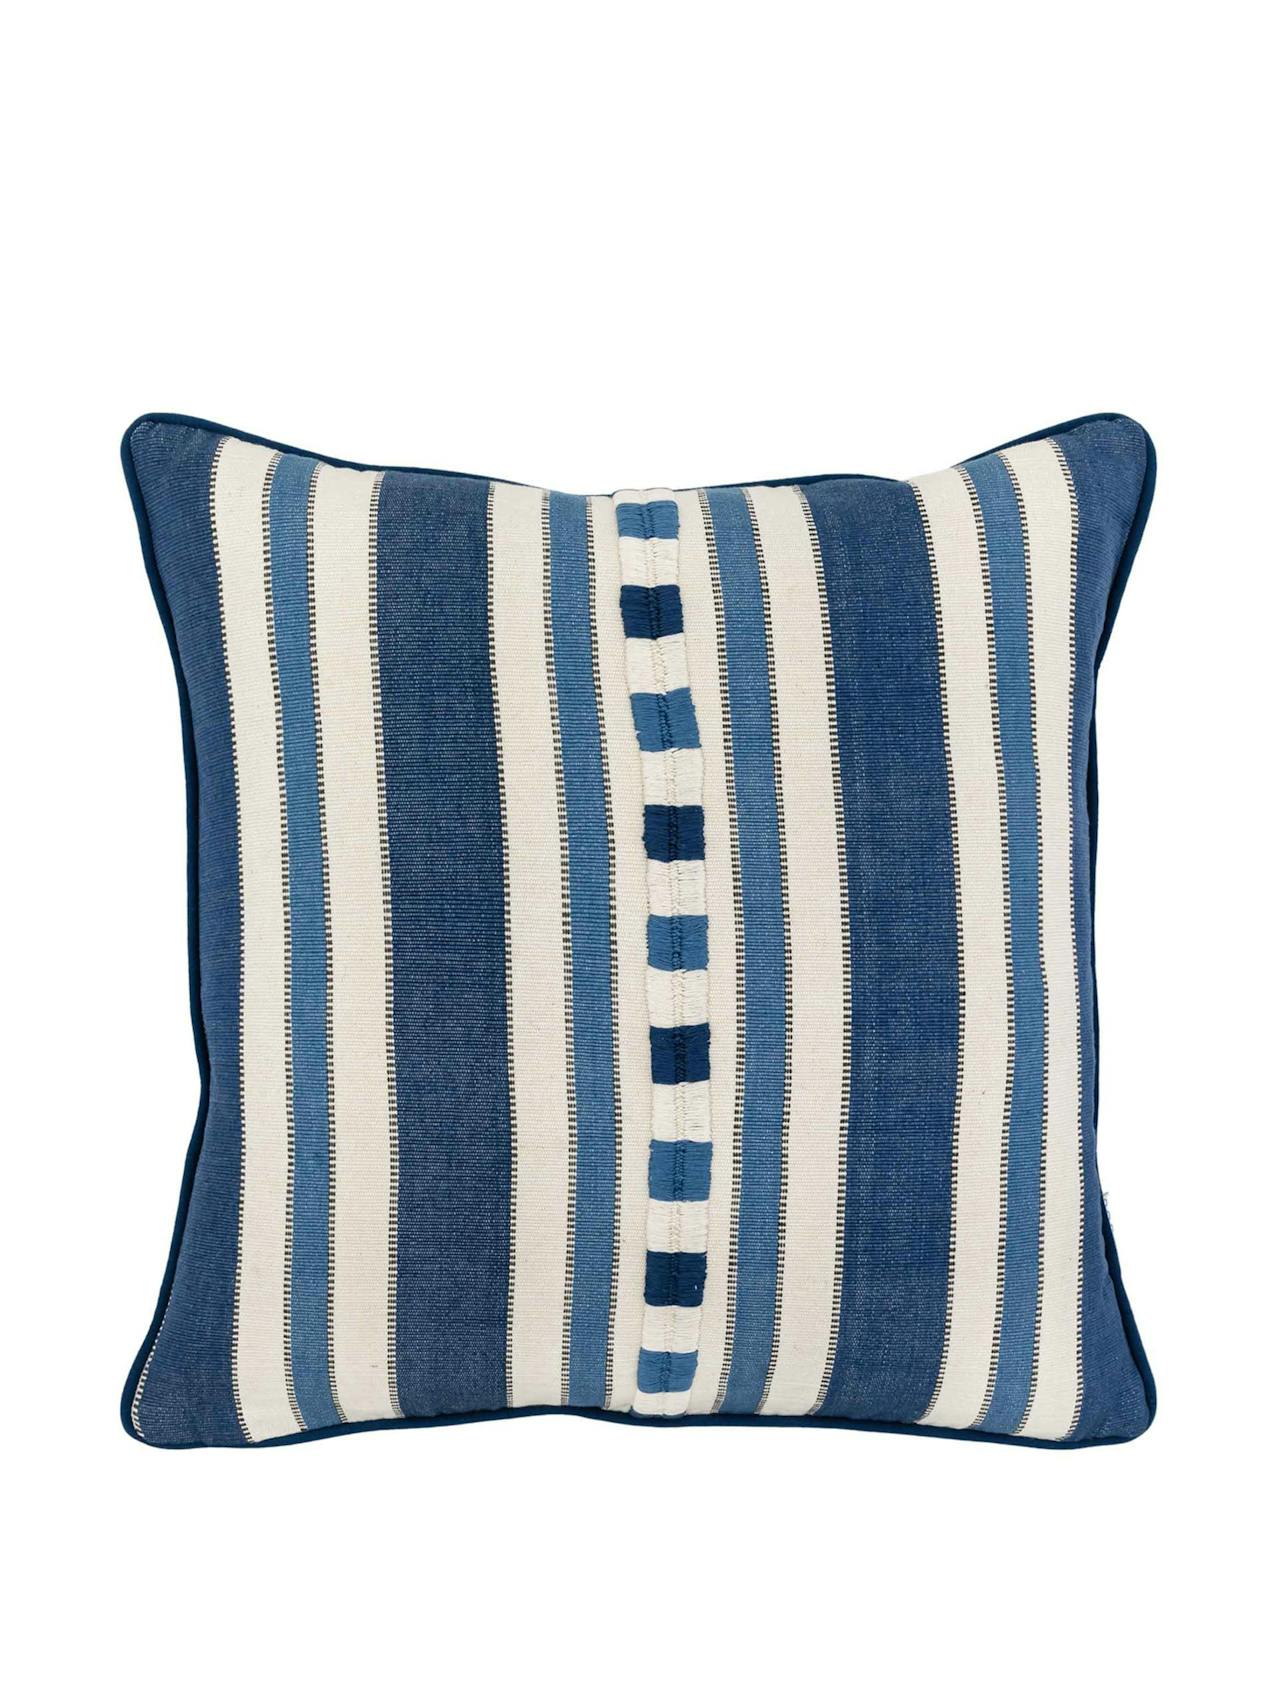 Raya blue square cushion